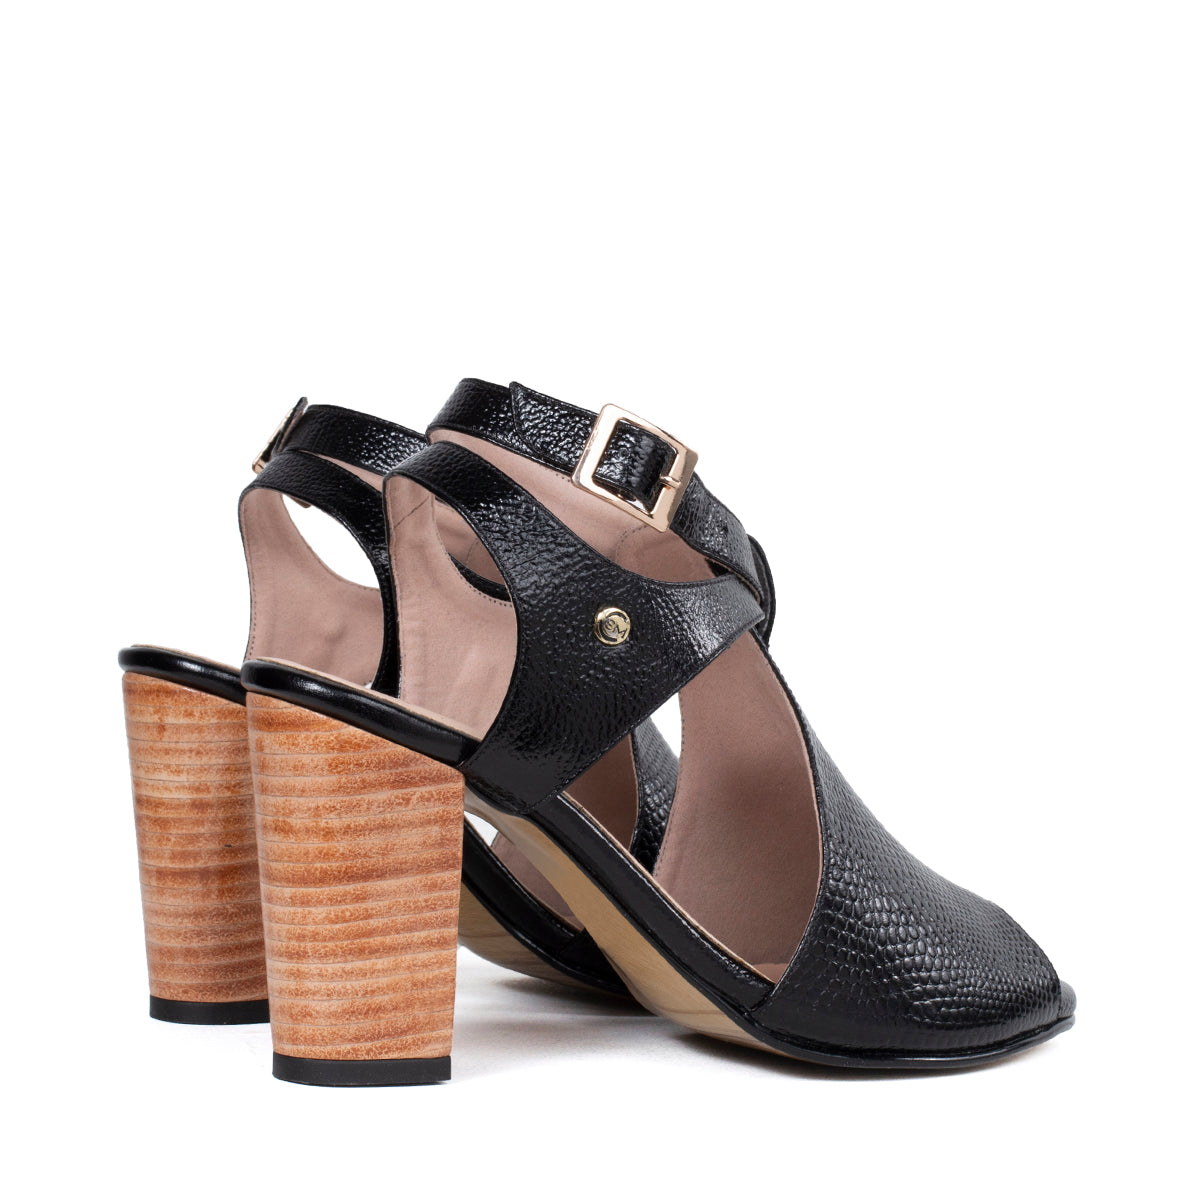 Sandalias de cuero color negro con texturizado tipo croco